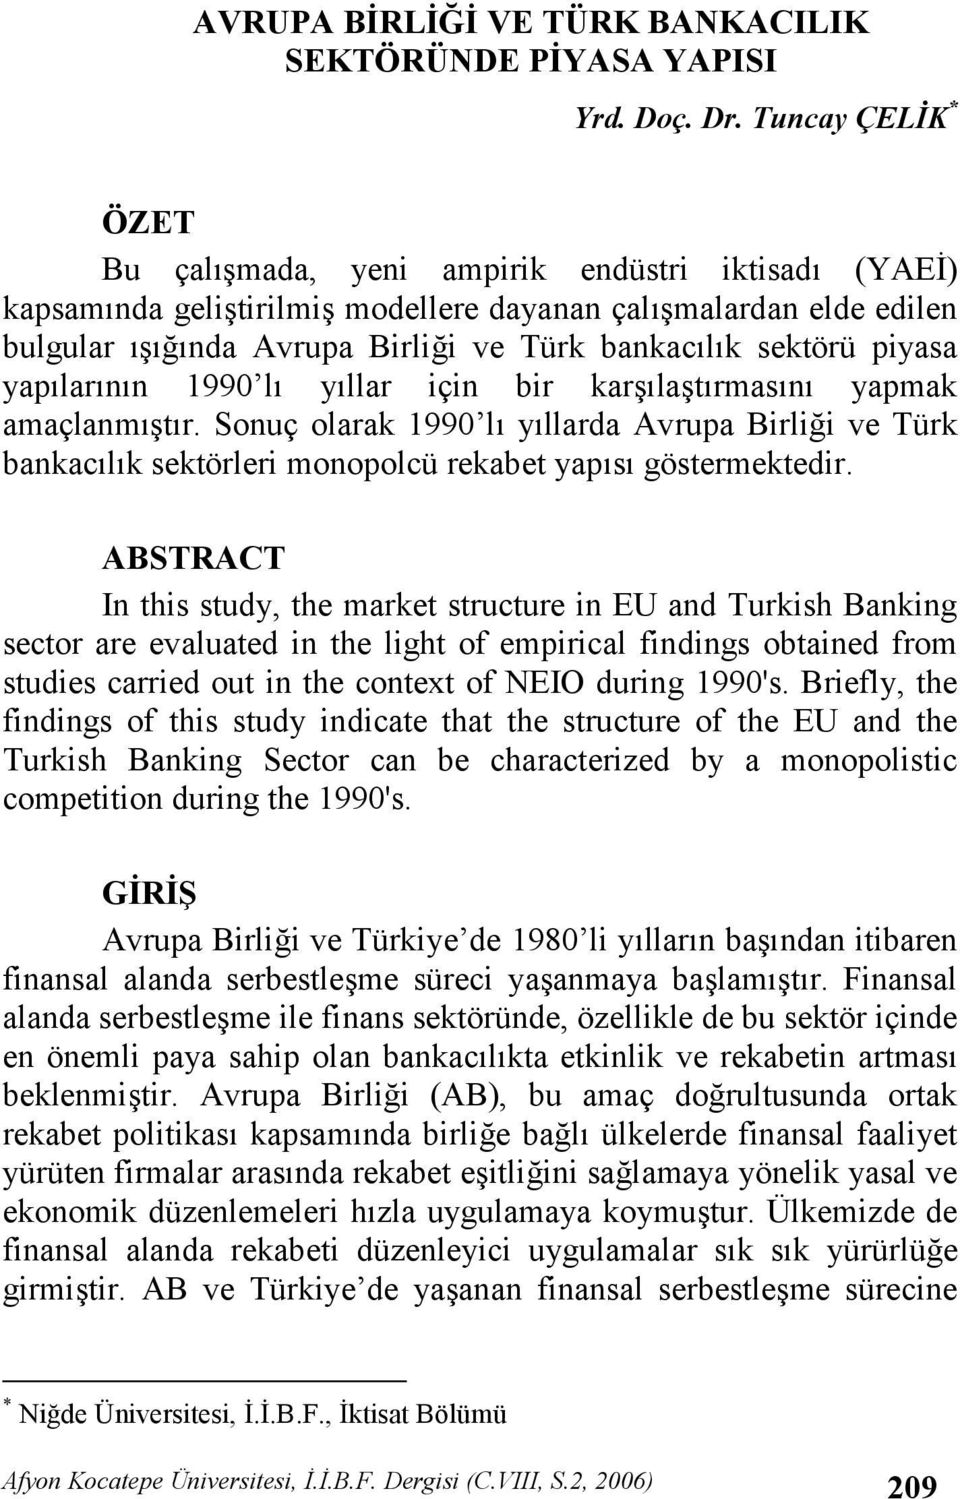 1990 l yllar için bir karlatrmasn yapmak amaçlanmtr. Sonuç olarak 1990 l yllarda Avrupa Birlii ve Türk bankaclk sektörleri monopolcü rekabet yaps göstermektedir.